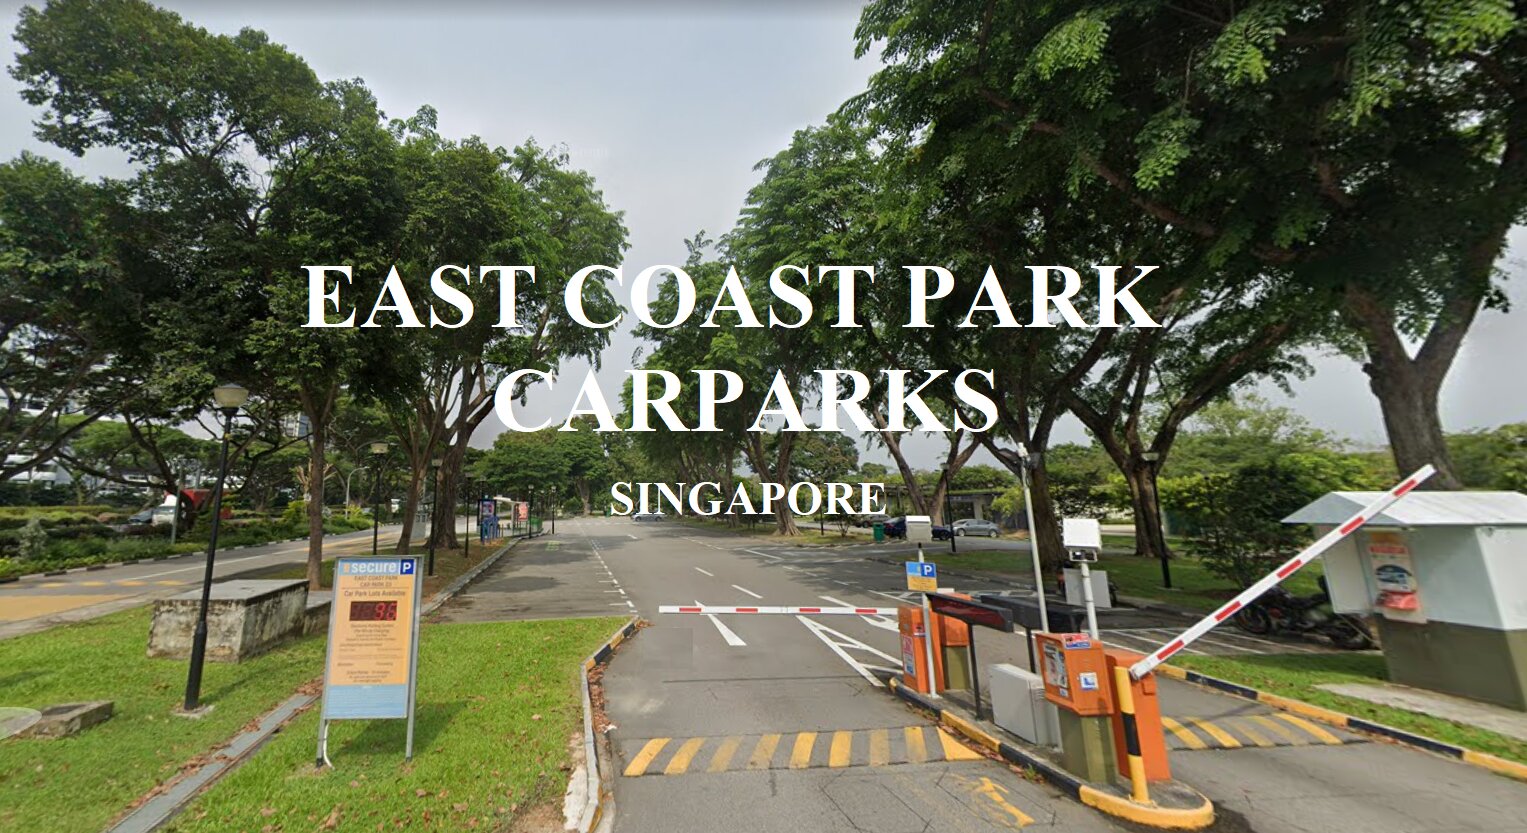 Car Parks near East Coast Park Singapore